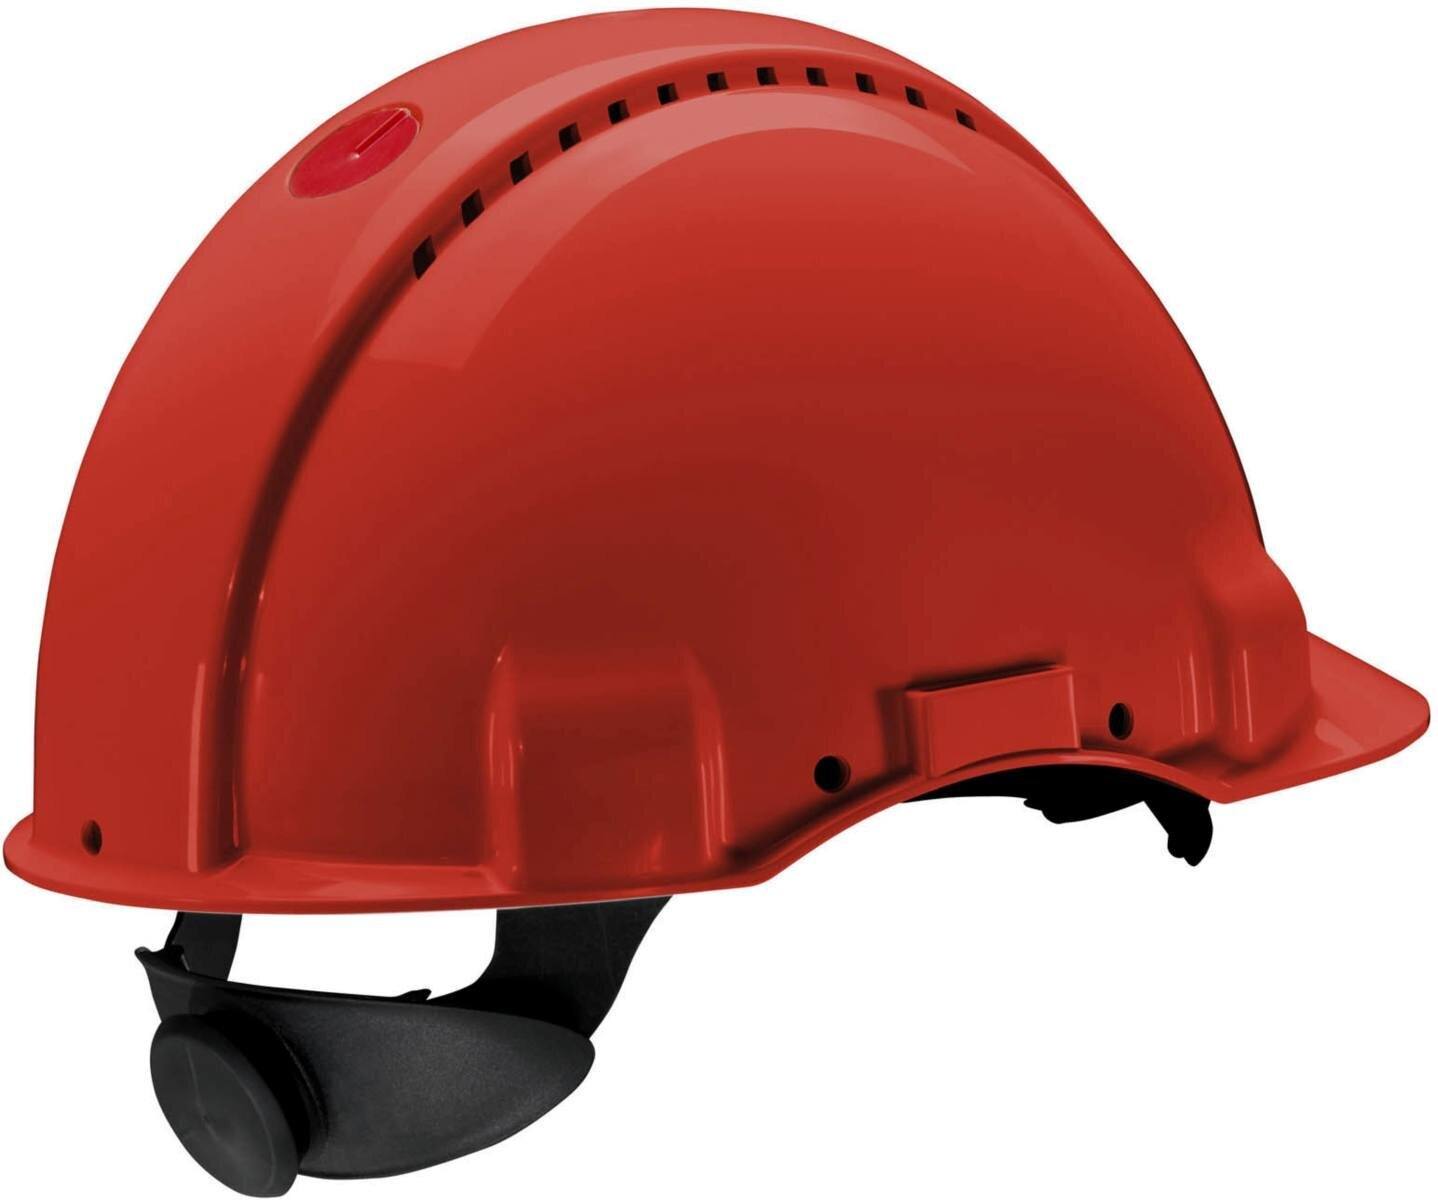 Elmetto di sicurezza 3M G3000 G30NUR rosso, ventilato, con uvicatore, cricchetto e cinturino in plastica per saldatura